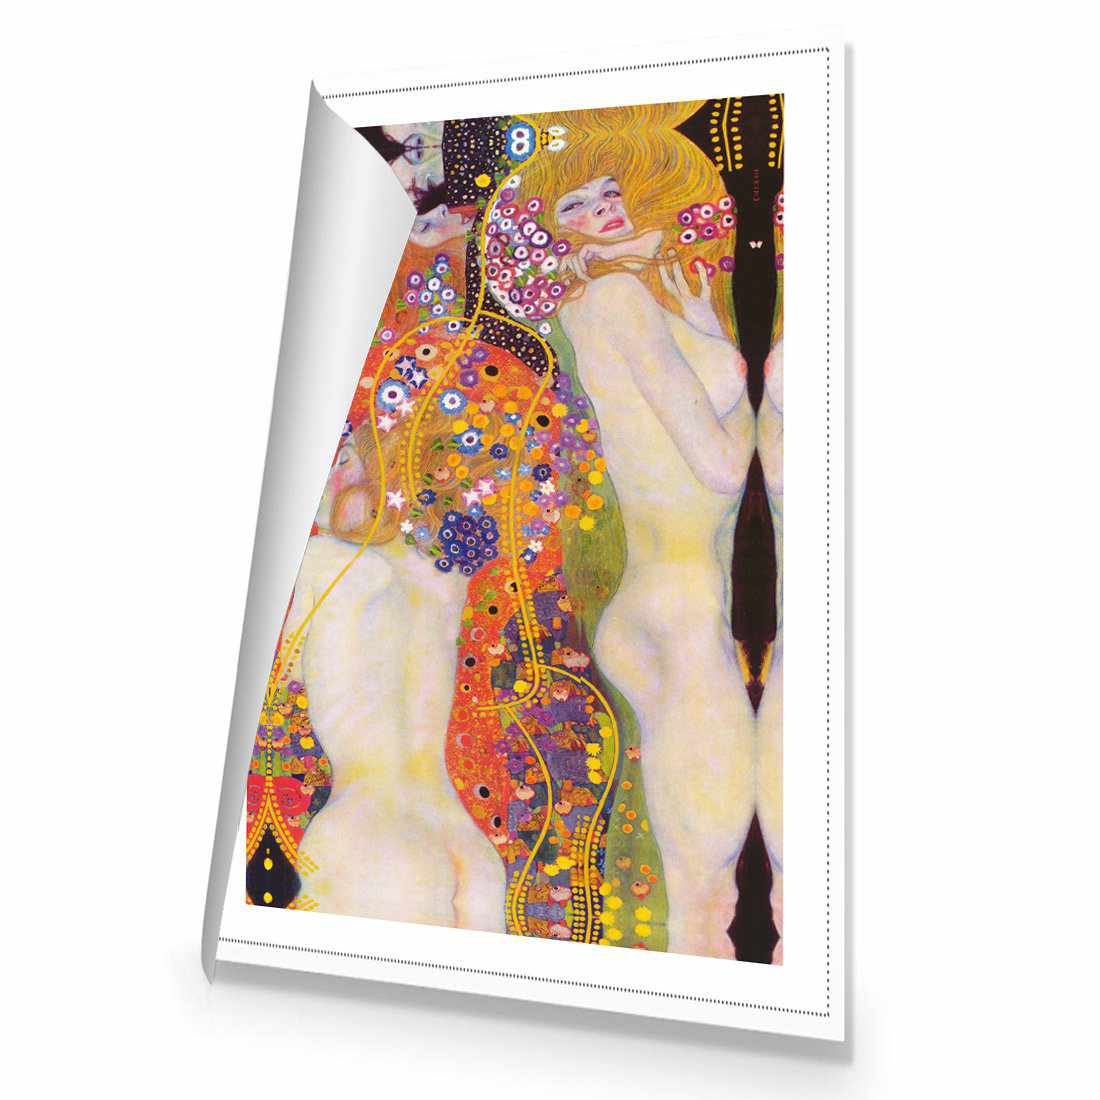 Water Serpents - Gustav Klimt Canvas Art-Canvas-Wall Art Designs-45x30cm-Rolled Canvas-Wall Art Designs